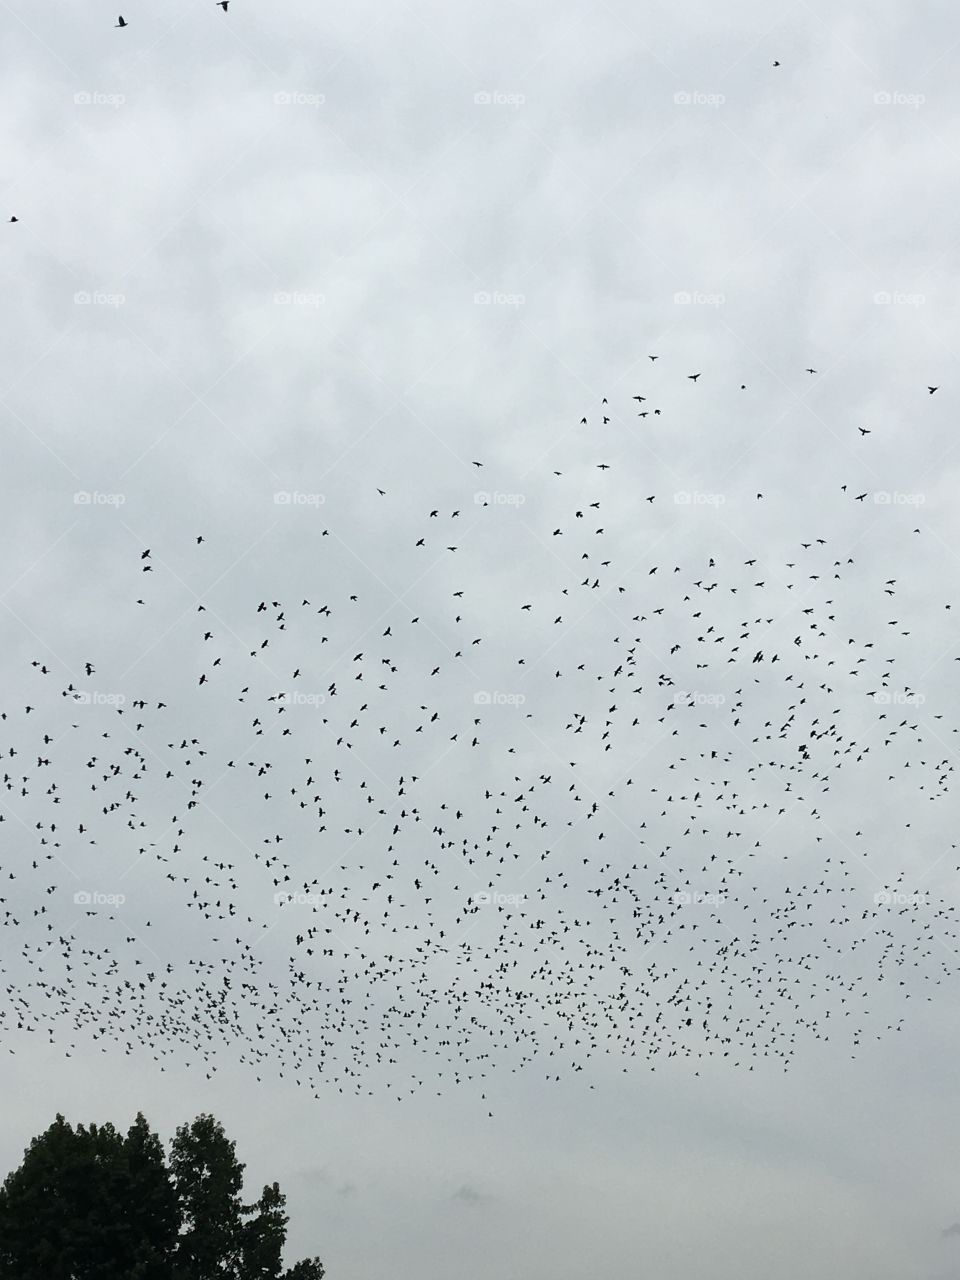 Flocking birds 